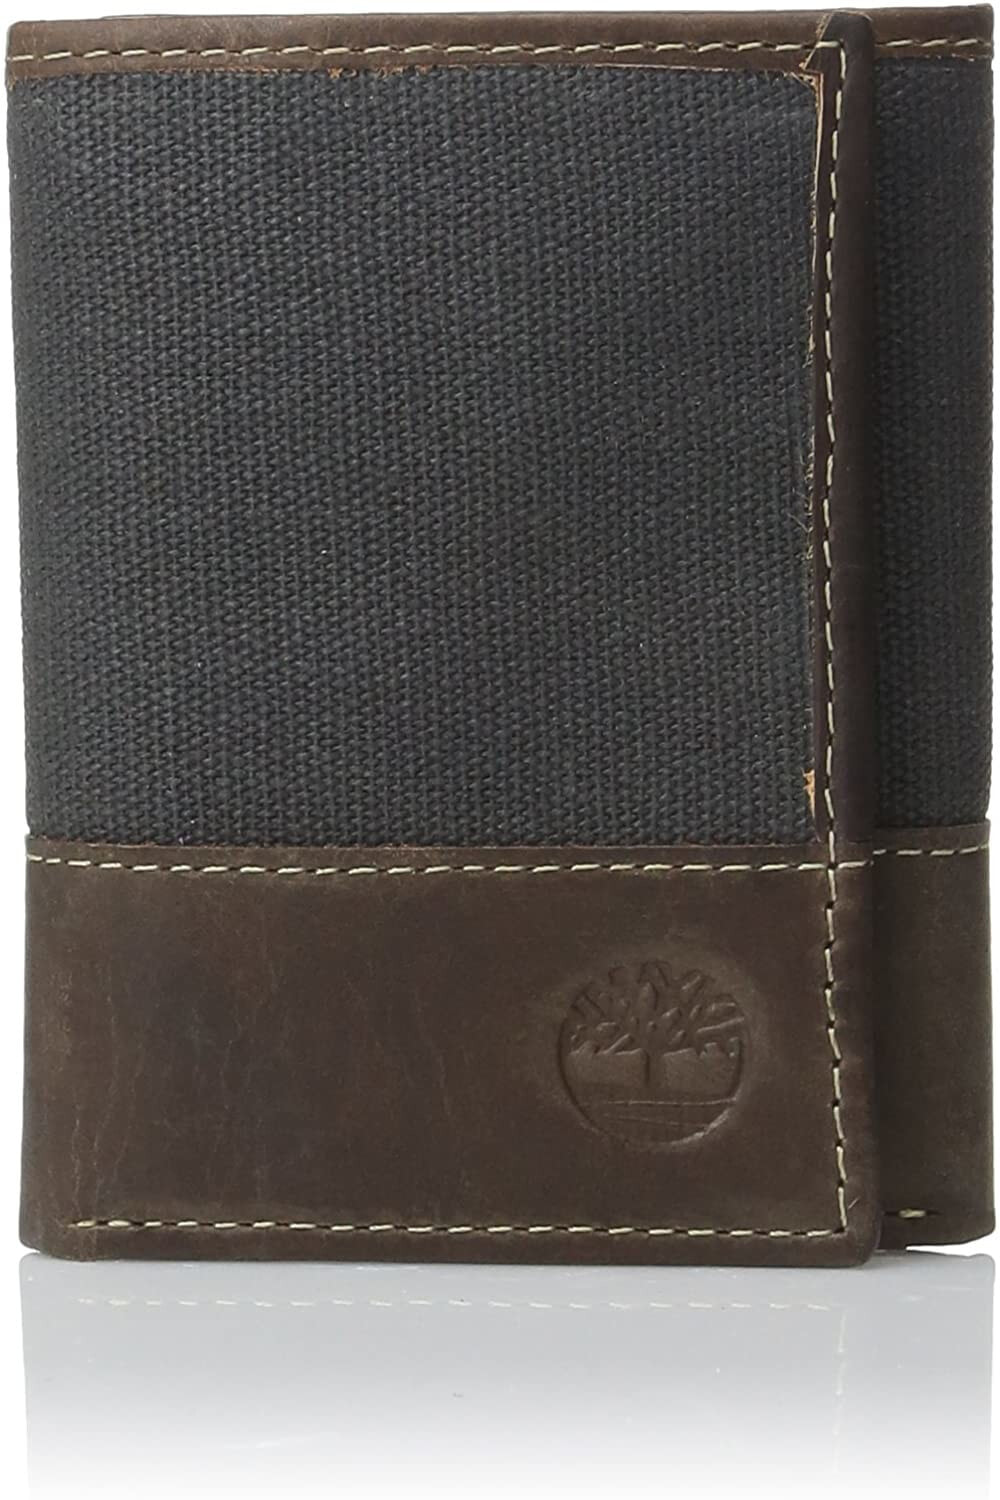 Мужское портмоне кожаное вертикальное черное коричневое без застежки  	Timberland Men's Canvas & Leather Trifold Wallet